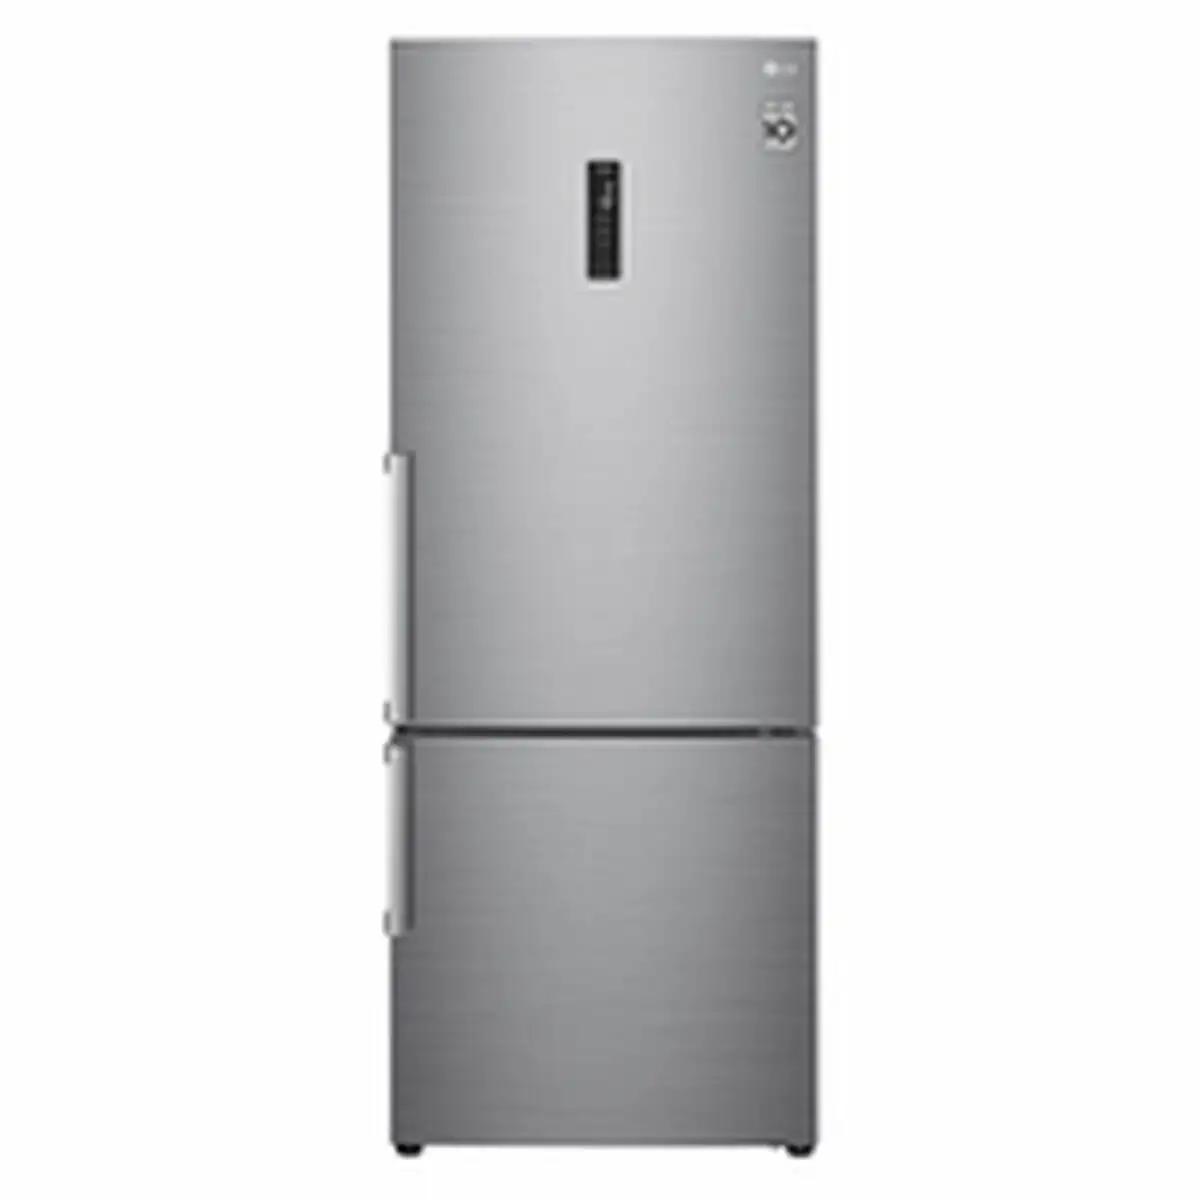 Refrigerateur combine lg gbb567pzcmb acier 185 x 70 cm _5424. DIAYTAR SENEGAL - Votre Destination Shopping d'Exception. Parcourez nos rayons virtuels et choisissez des produits qui incarnent l'excellence et la diversité.